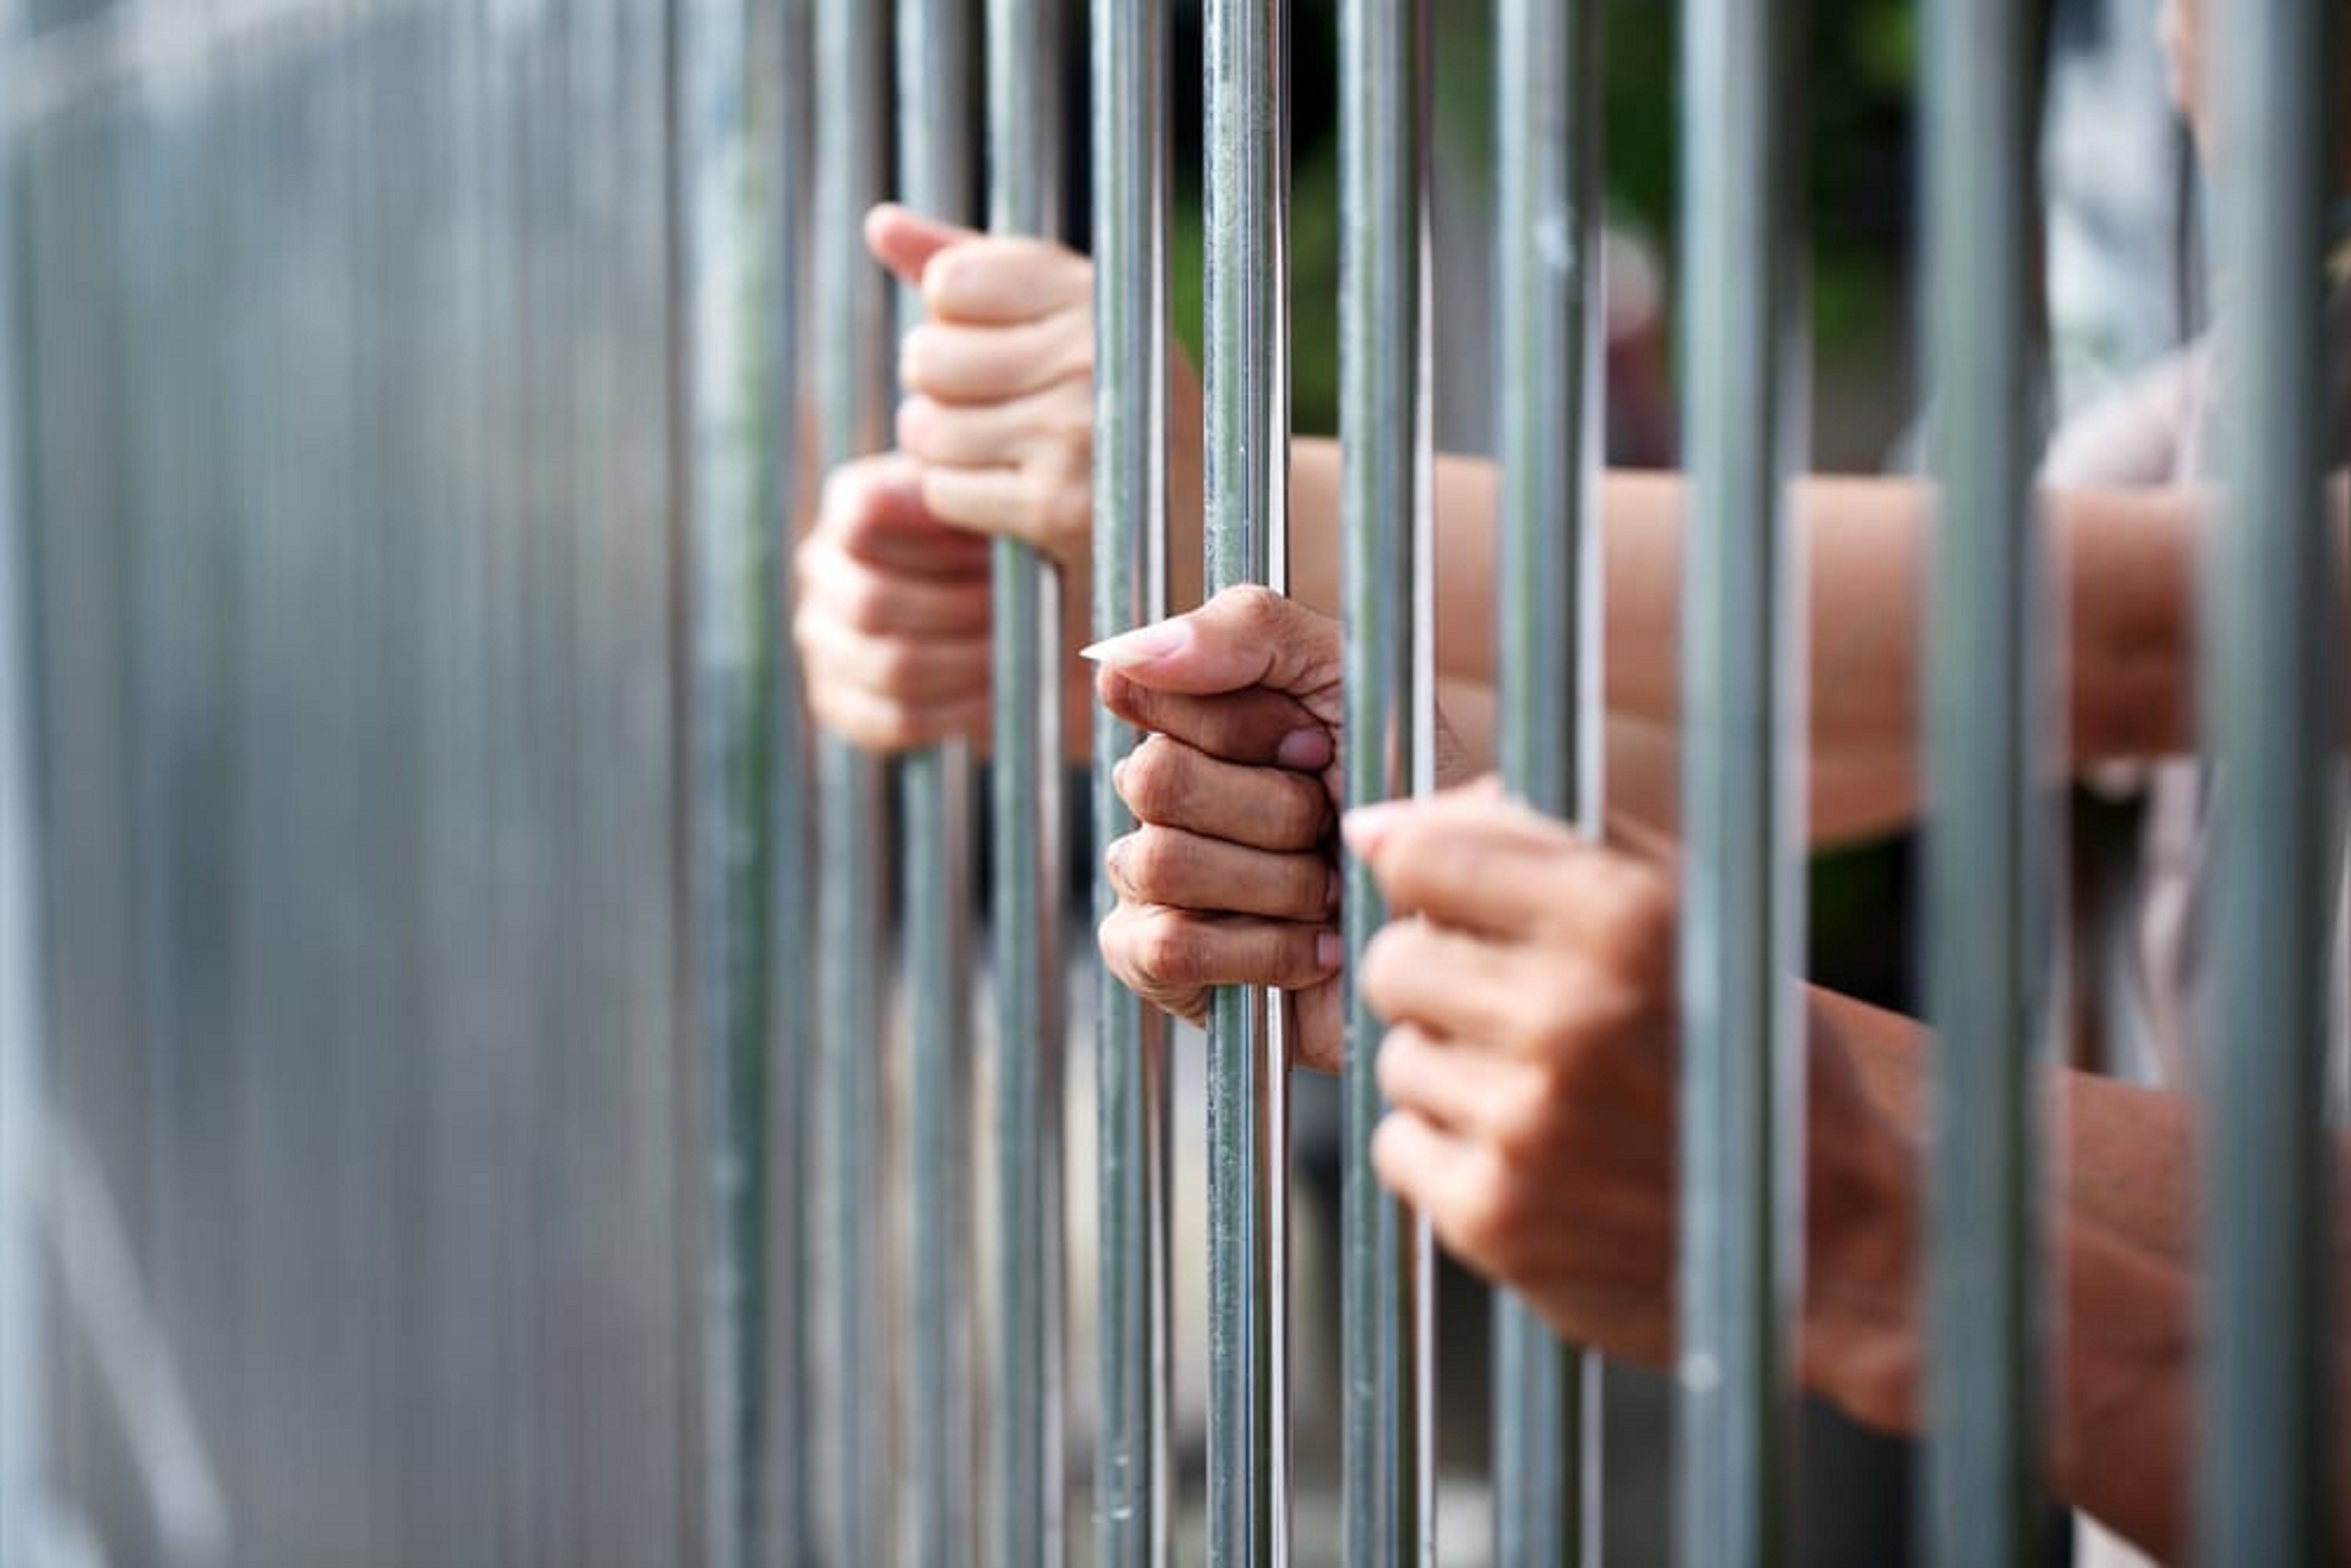 बहराइनका जेलमा कोरोना संक्रमण रोक्न दर्जनौँ कैदी रिहा गरिँदै